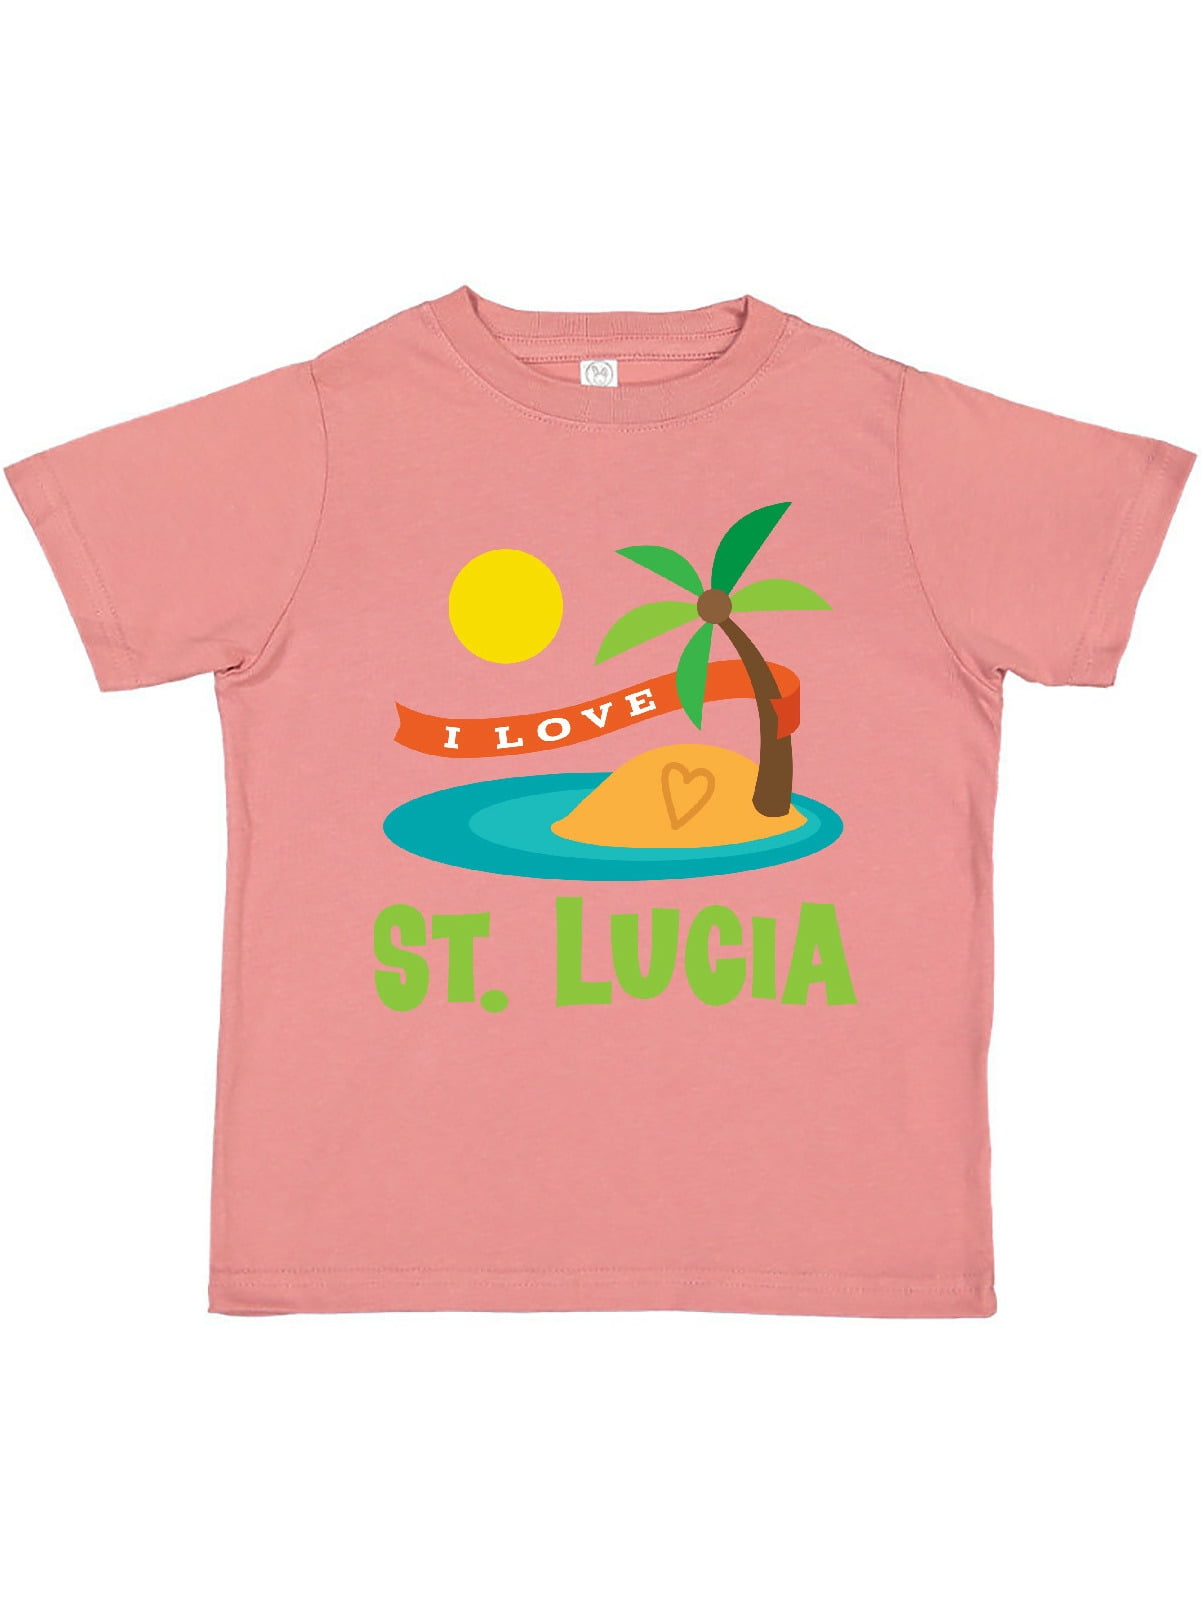 St Lucia text T-Shirt 